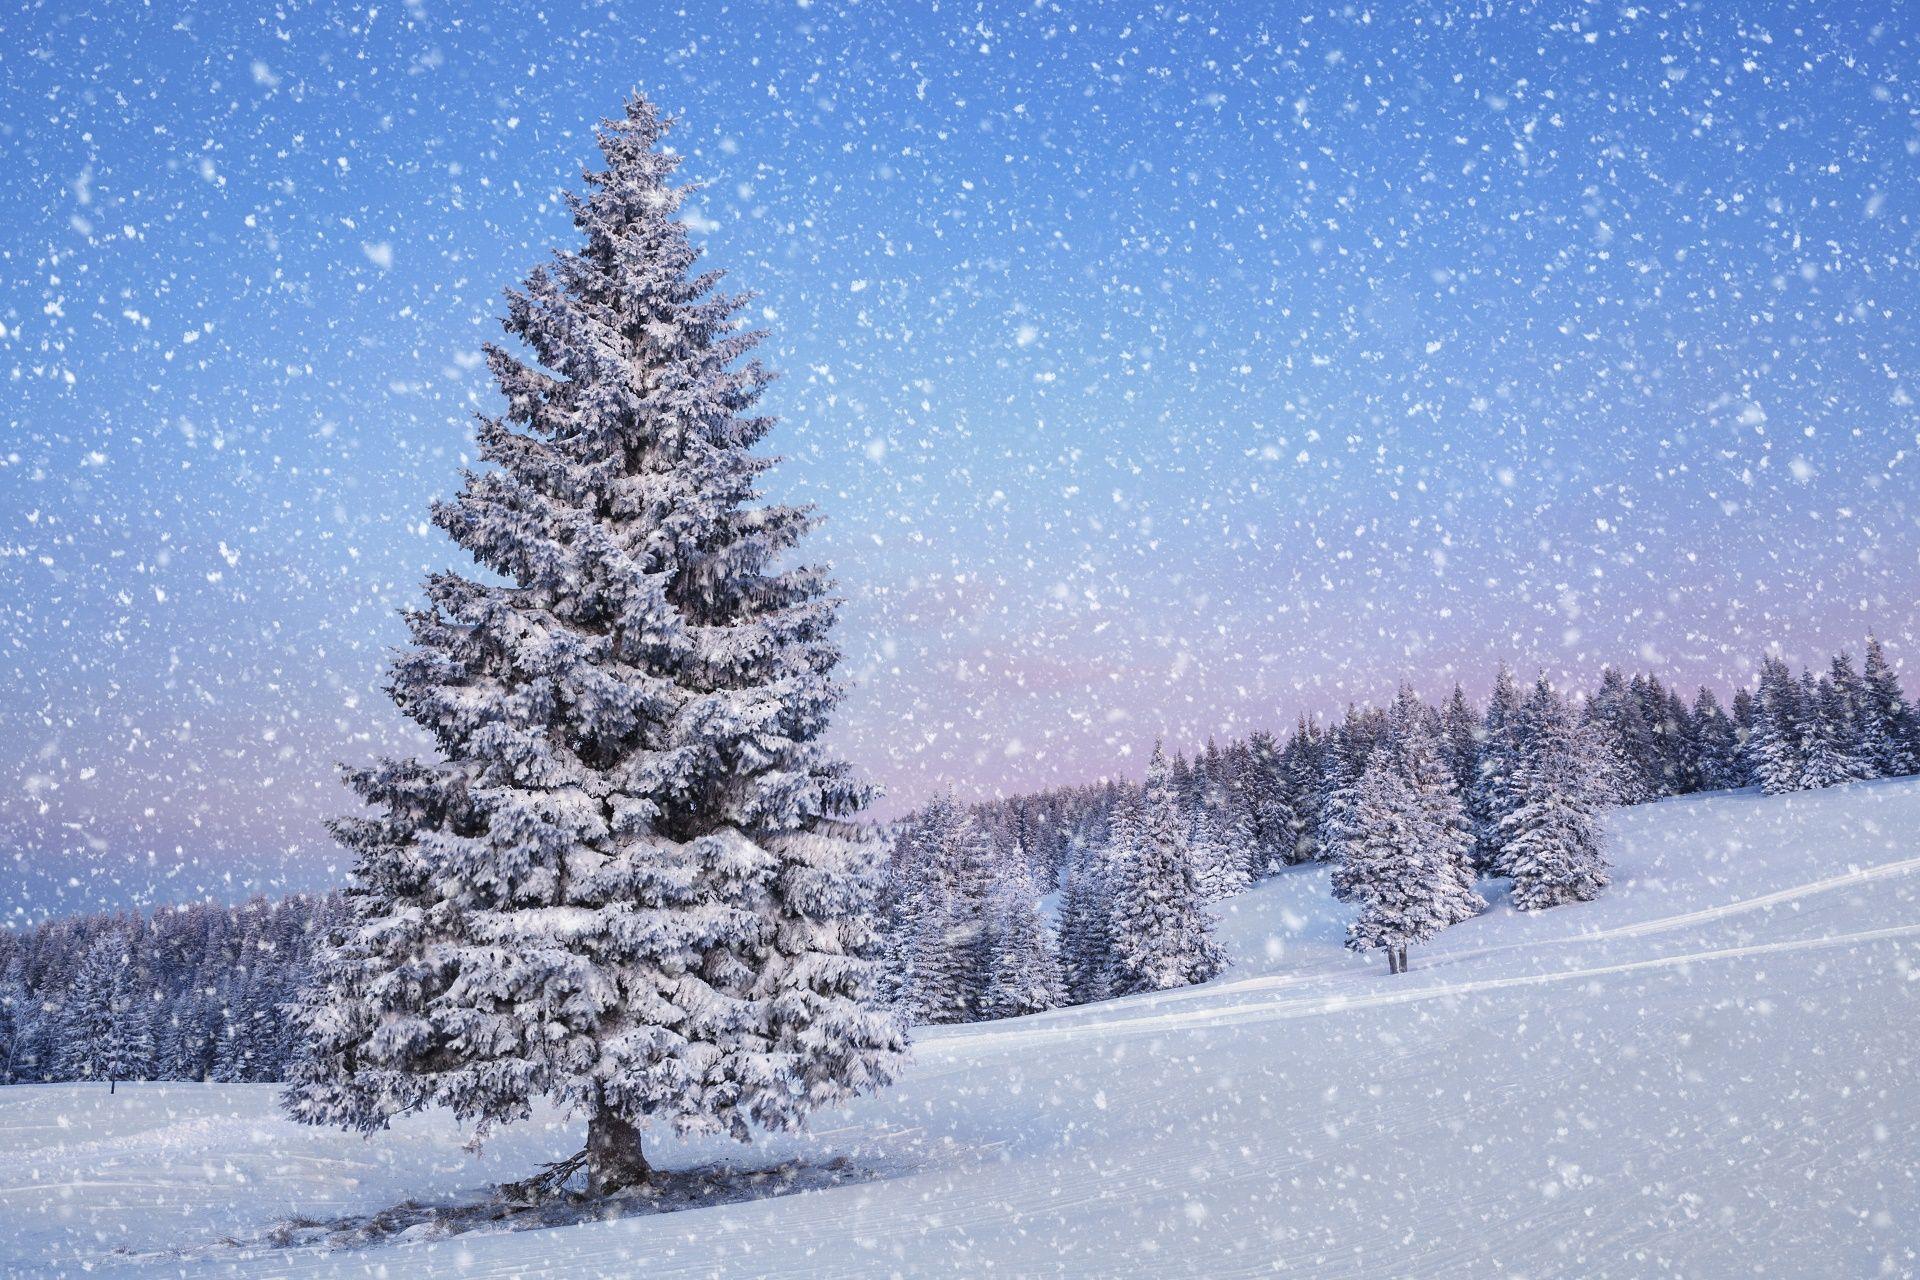 Snowfall Wallpapers - Top Những Hình Ảnh Đẹp